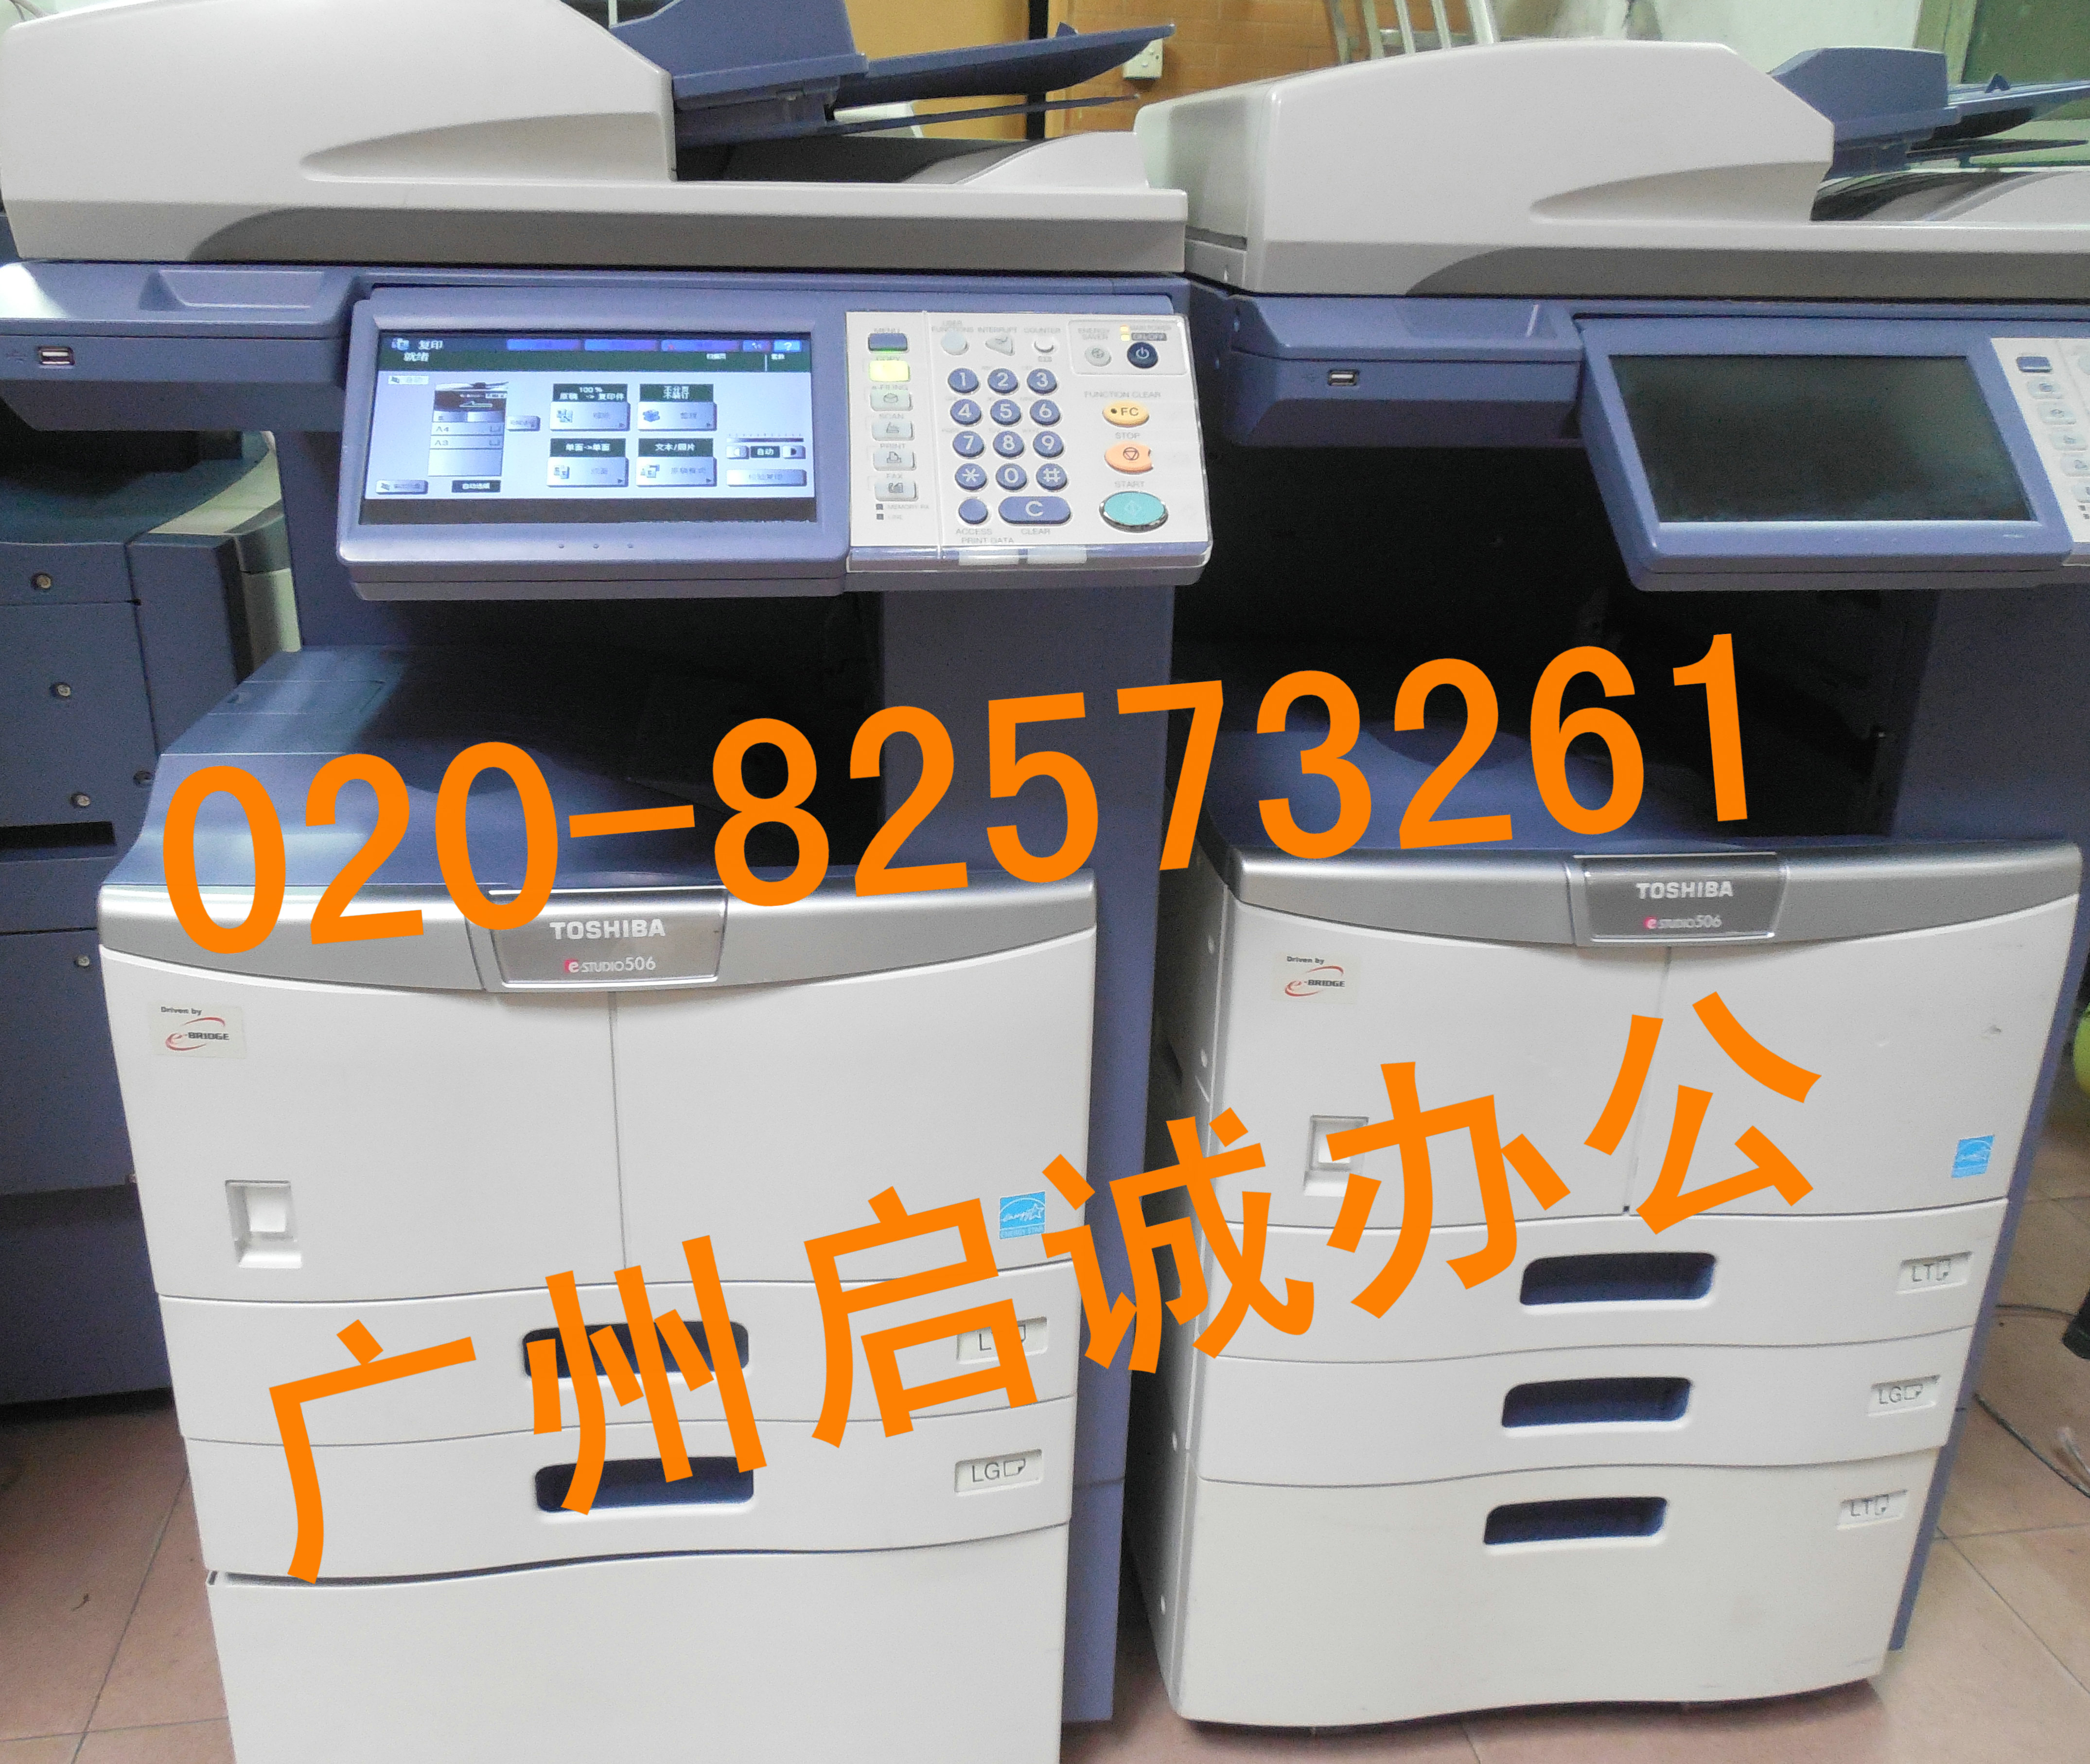 供应东芝二手复印机E-356批发020-82573261图片